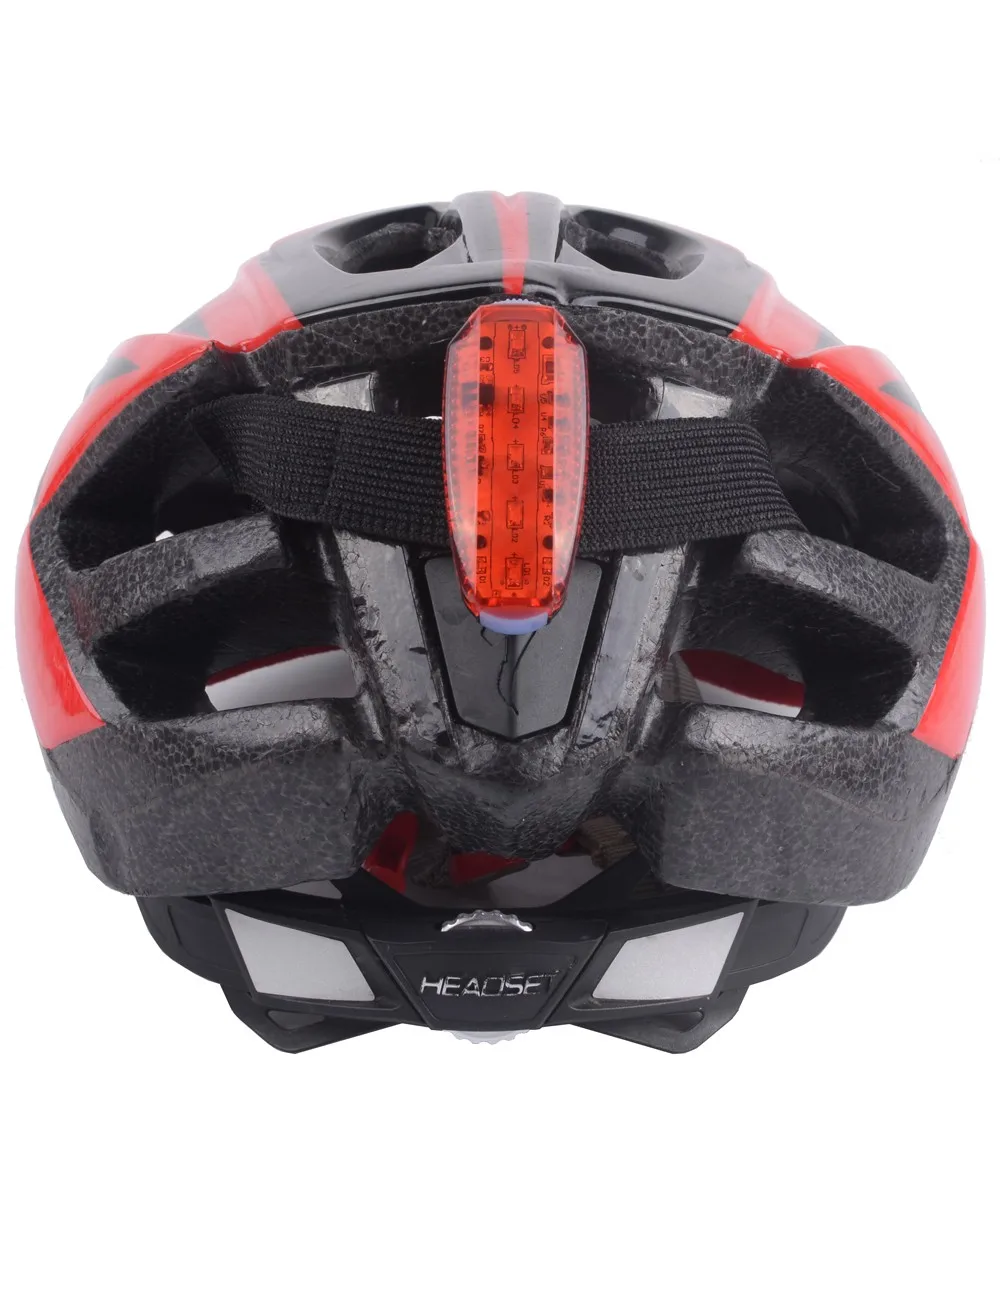 ZTTO велосипедные шлемы безопасности в ночное время, Предупреждение, фонарь для велосипеда зарядка через usb